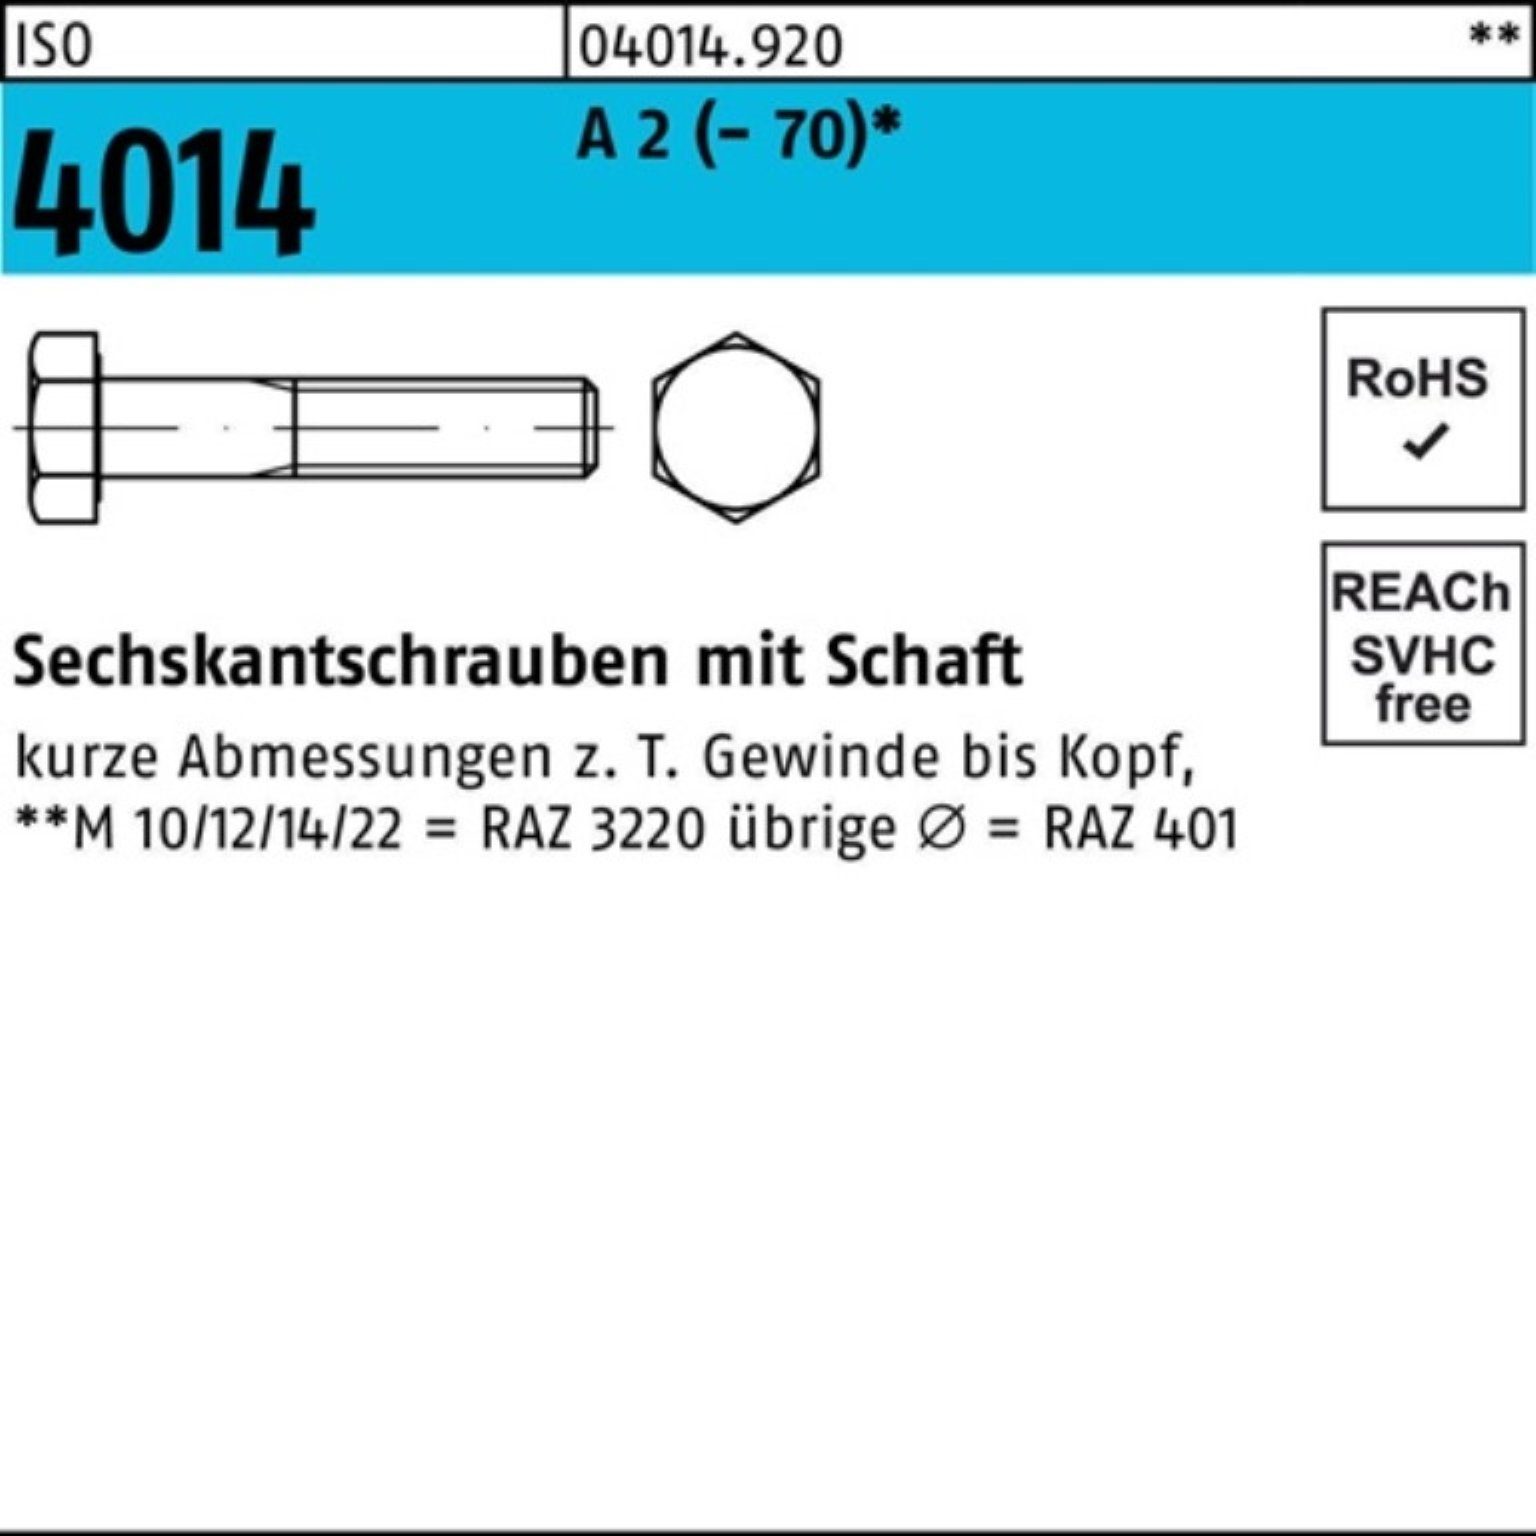 A 1 M20x 4014 ISO Sechskantschraube (70) St Pack Bufab 100er 2 Sechskantschraube Schaft 120